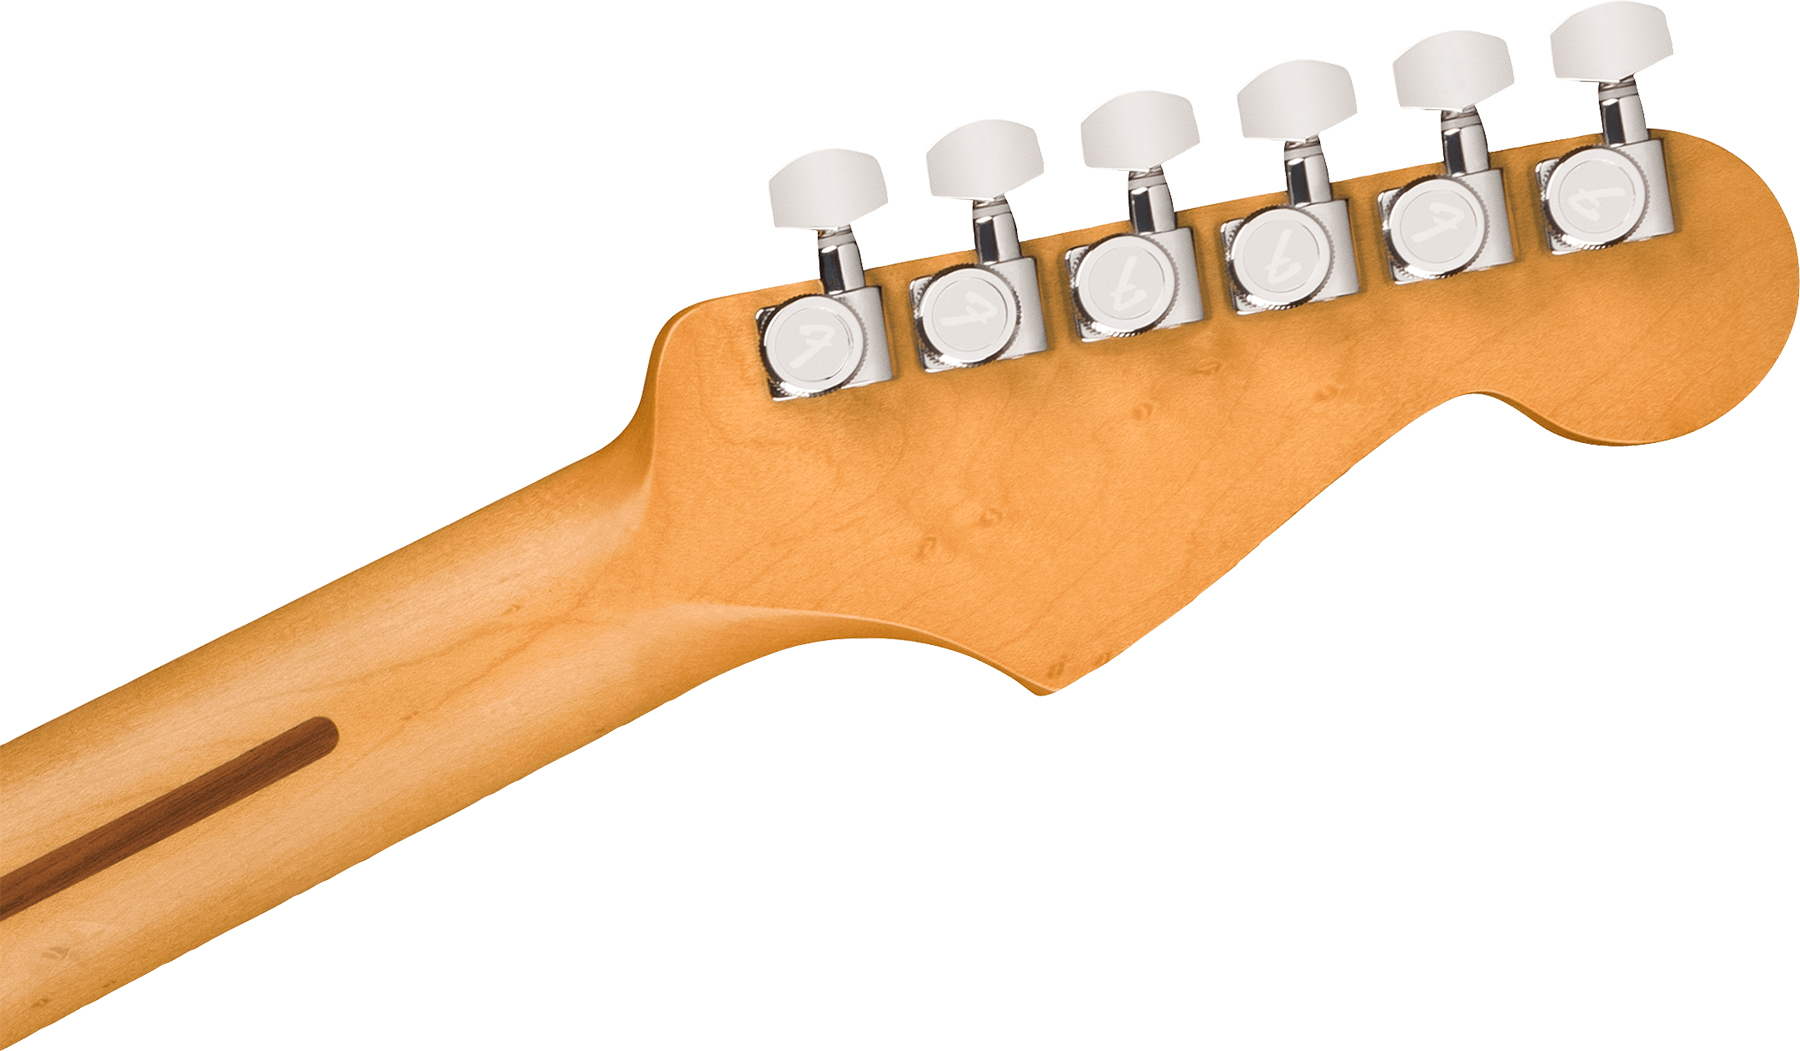 Fender Strat Player Plus Lh Gaucher Mex 3s Trem Pf - Tequila Sunrise - Linkshandige elektrische gitaar - Variation 3